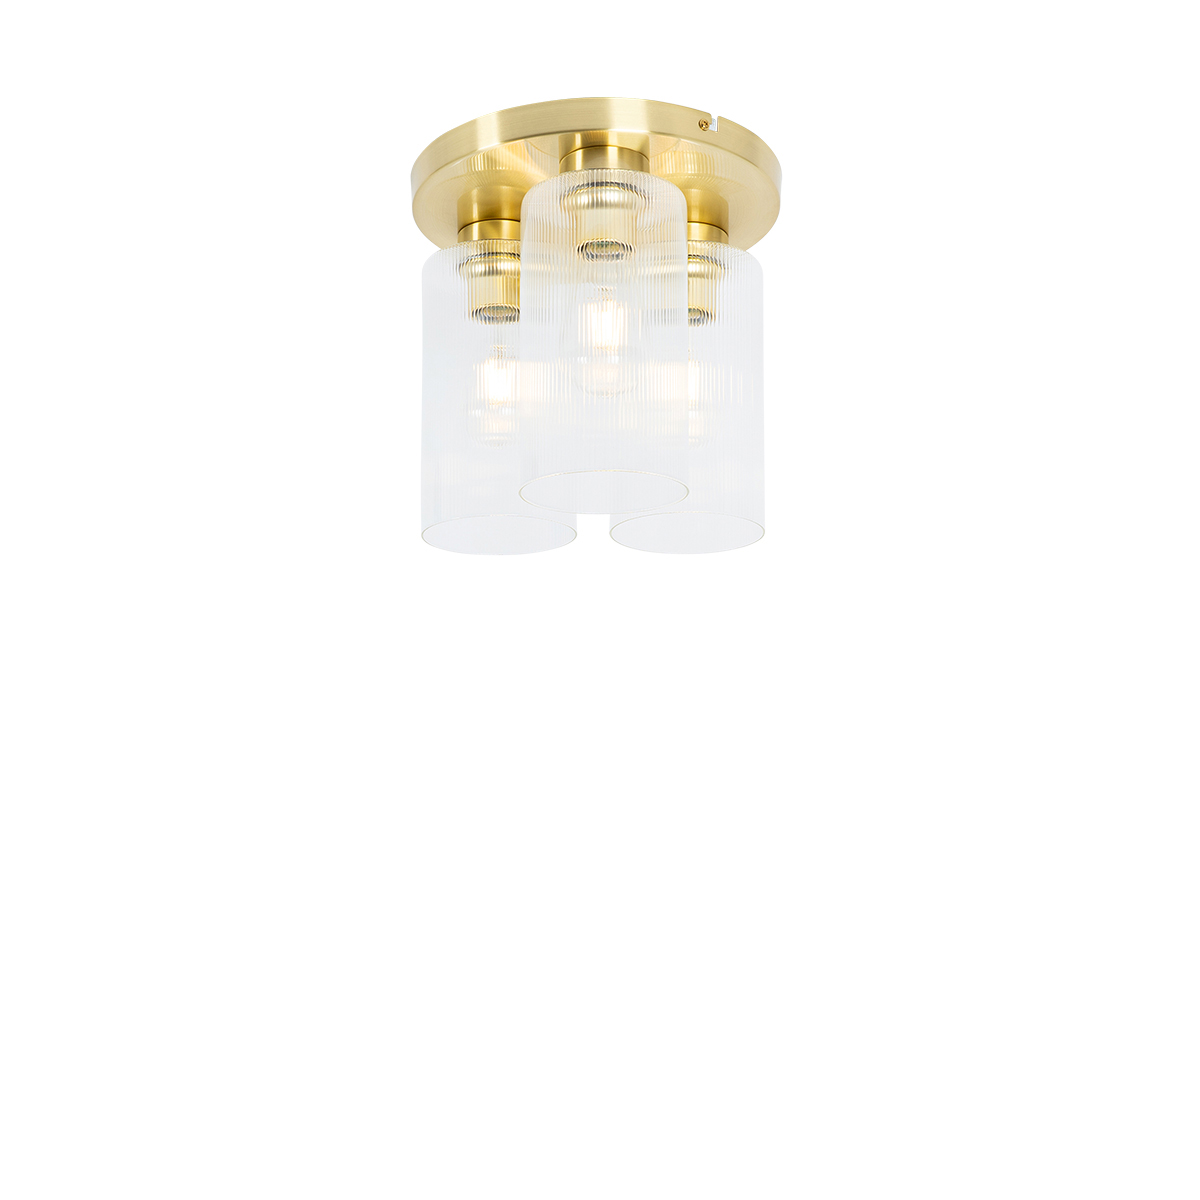 Art Deco mennyezeti lámpa arany üveggel 3 fényű - Laura